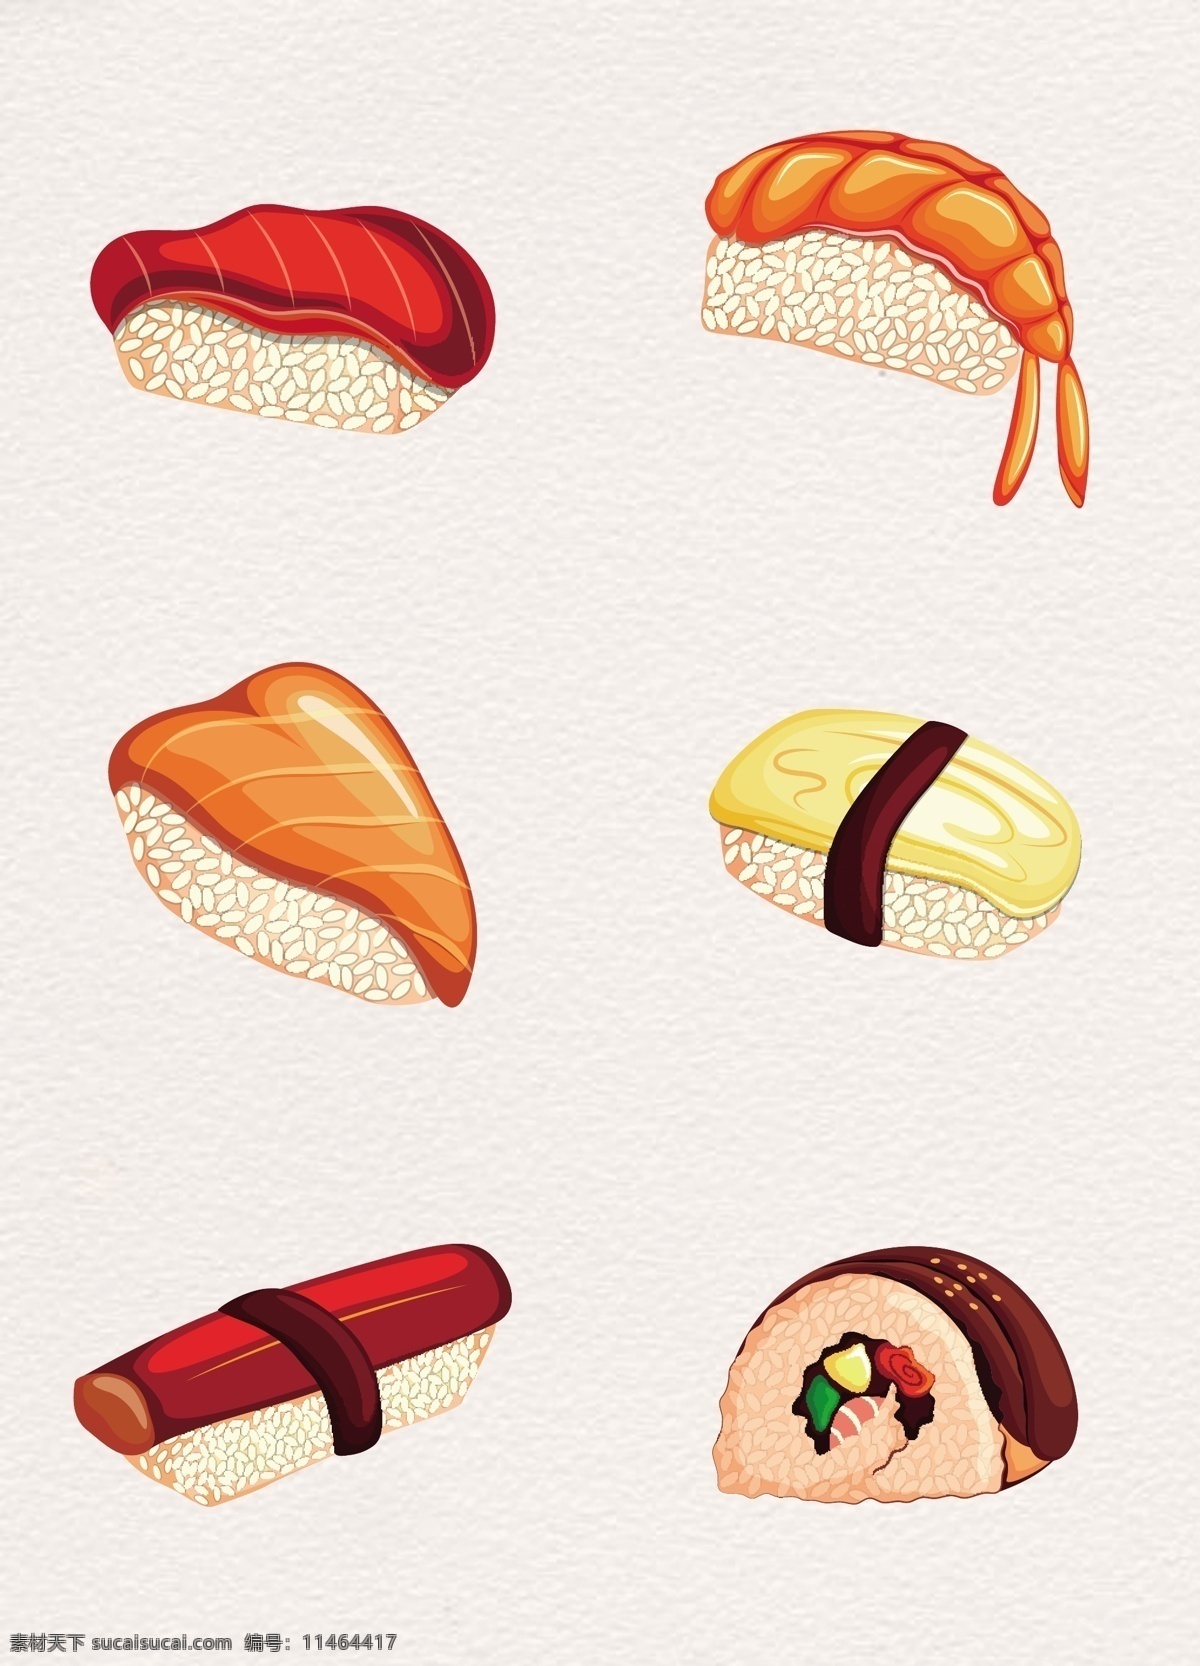 卡通 日本 寿司 矢量图 矢量食物 日本食物 食物 手绘 矢量寿司 寿司设计